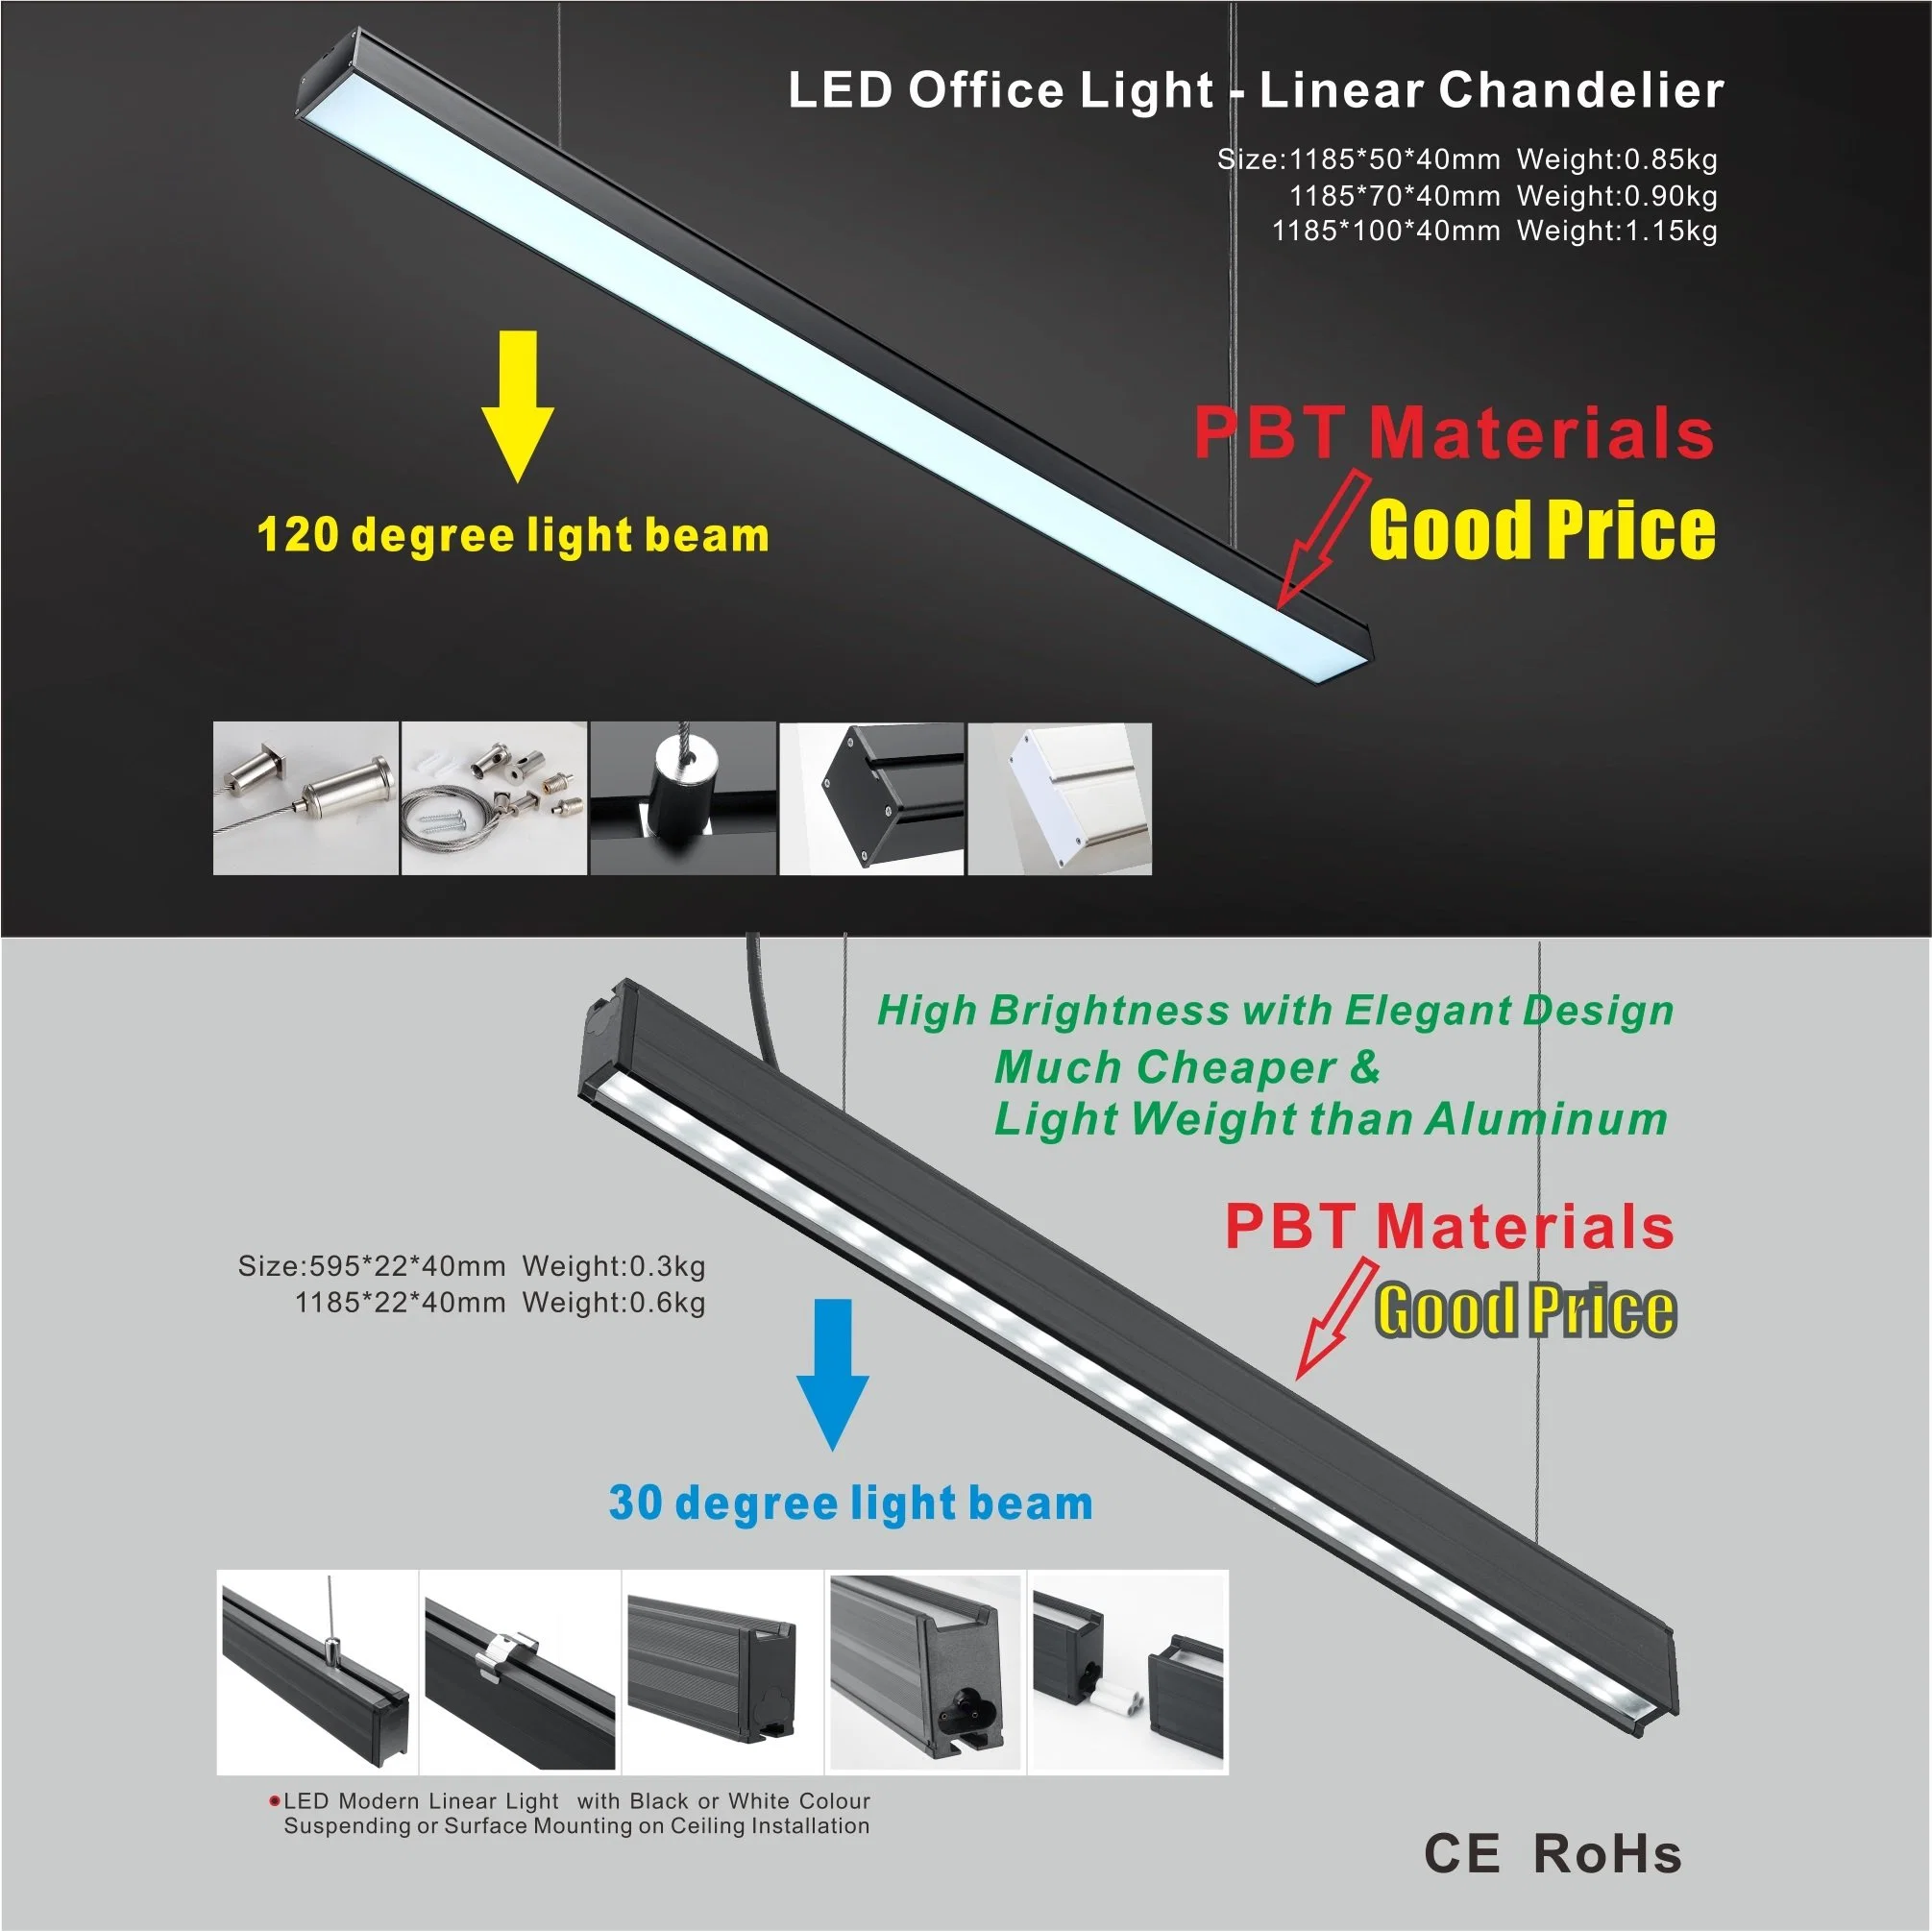 Luz linear LED pendente de batten suspensa no teto montada na superfície da habitação PBT lustre T8 linkável para escritório doméstico, sala de aula, escola e corredor comercial.